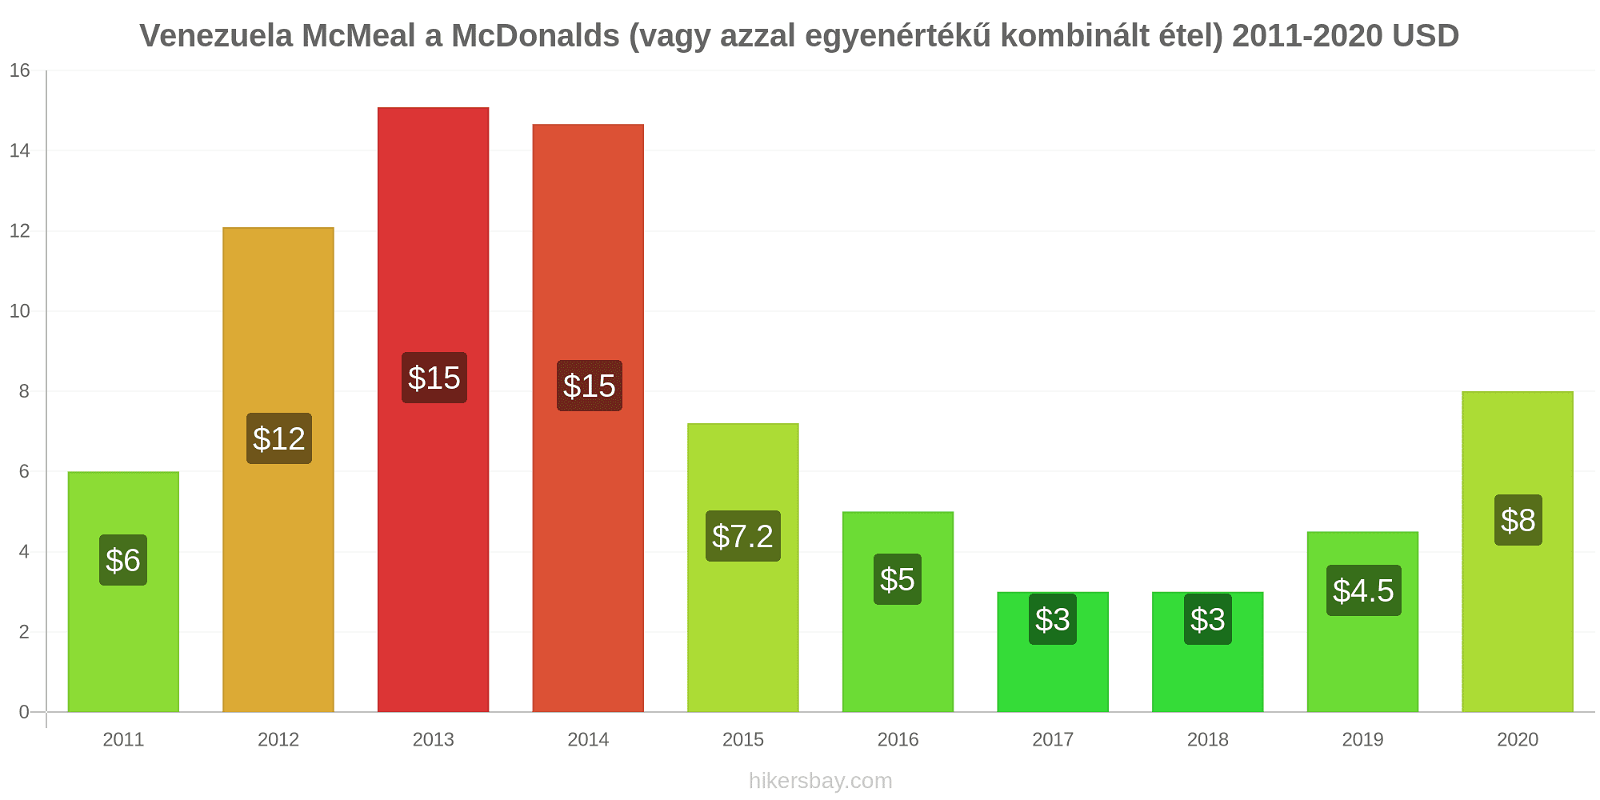 Venezuela árváltozások McMeal a McDonalds (vagy azzal egyenértékű kombinált étel) hikersbay.com